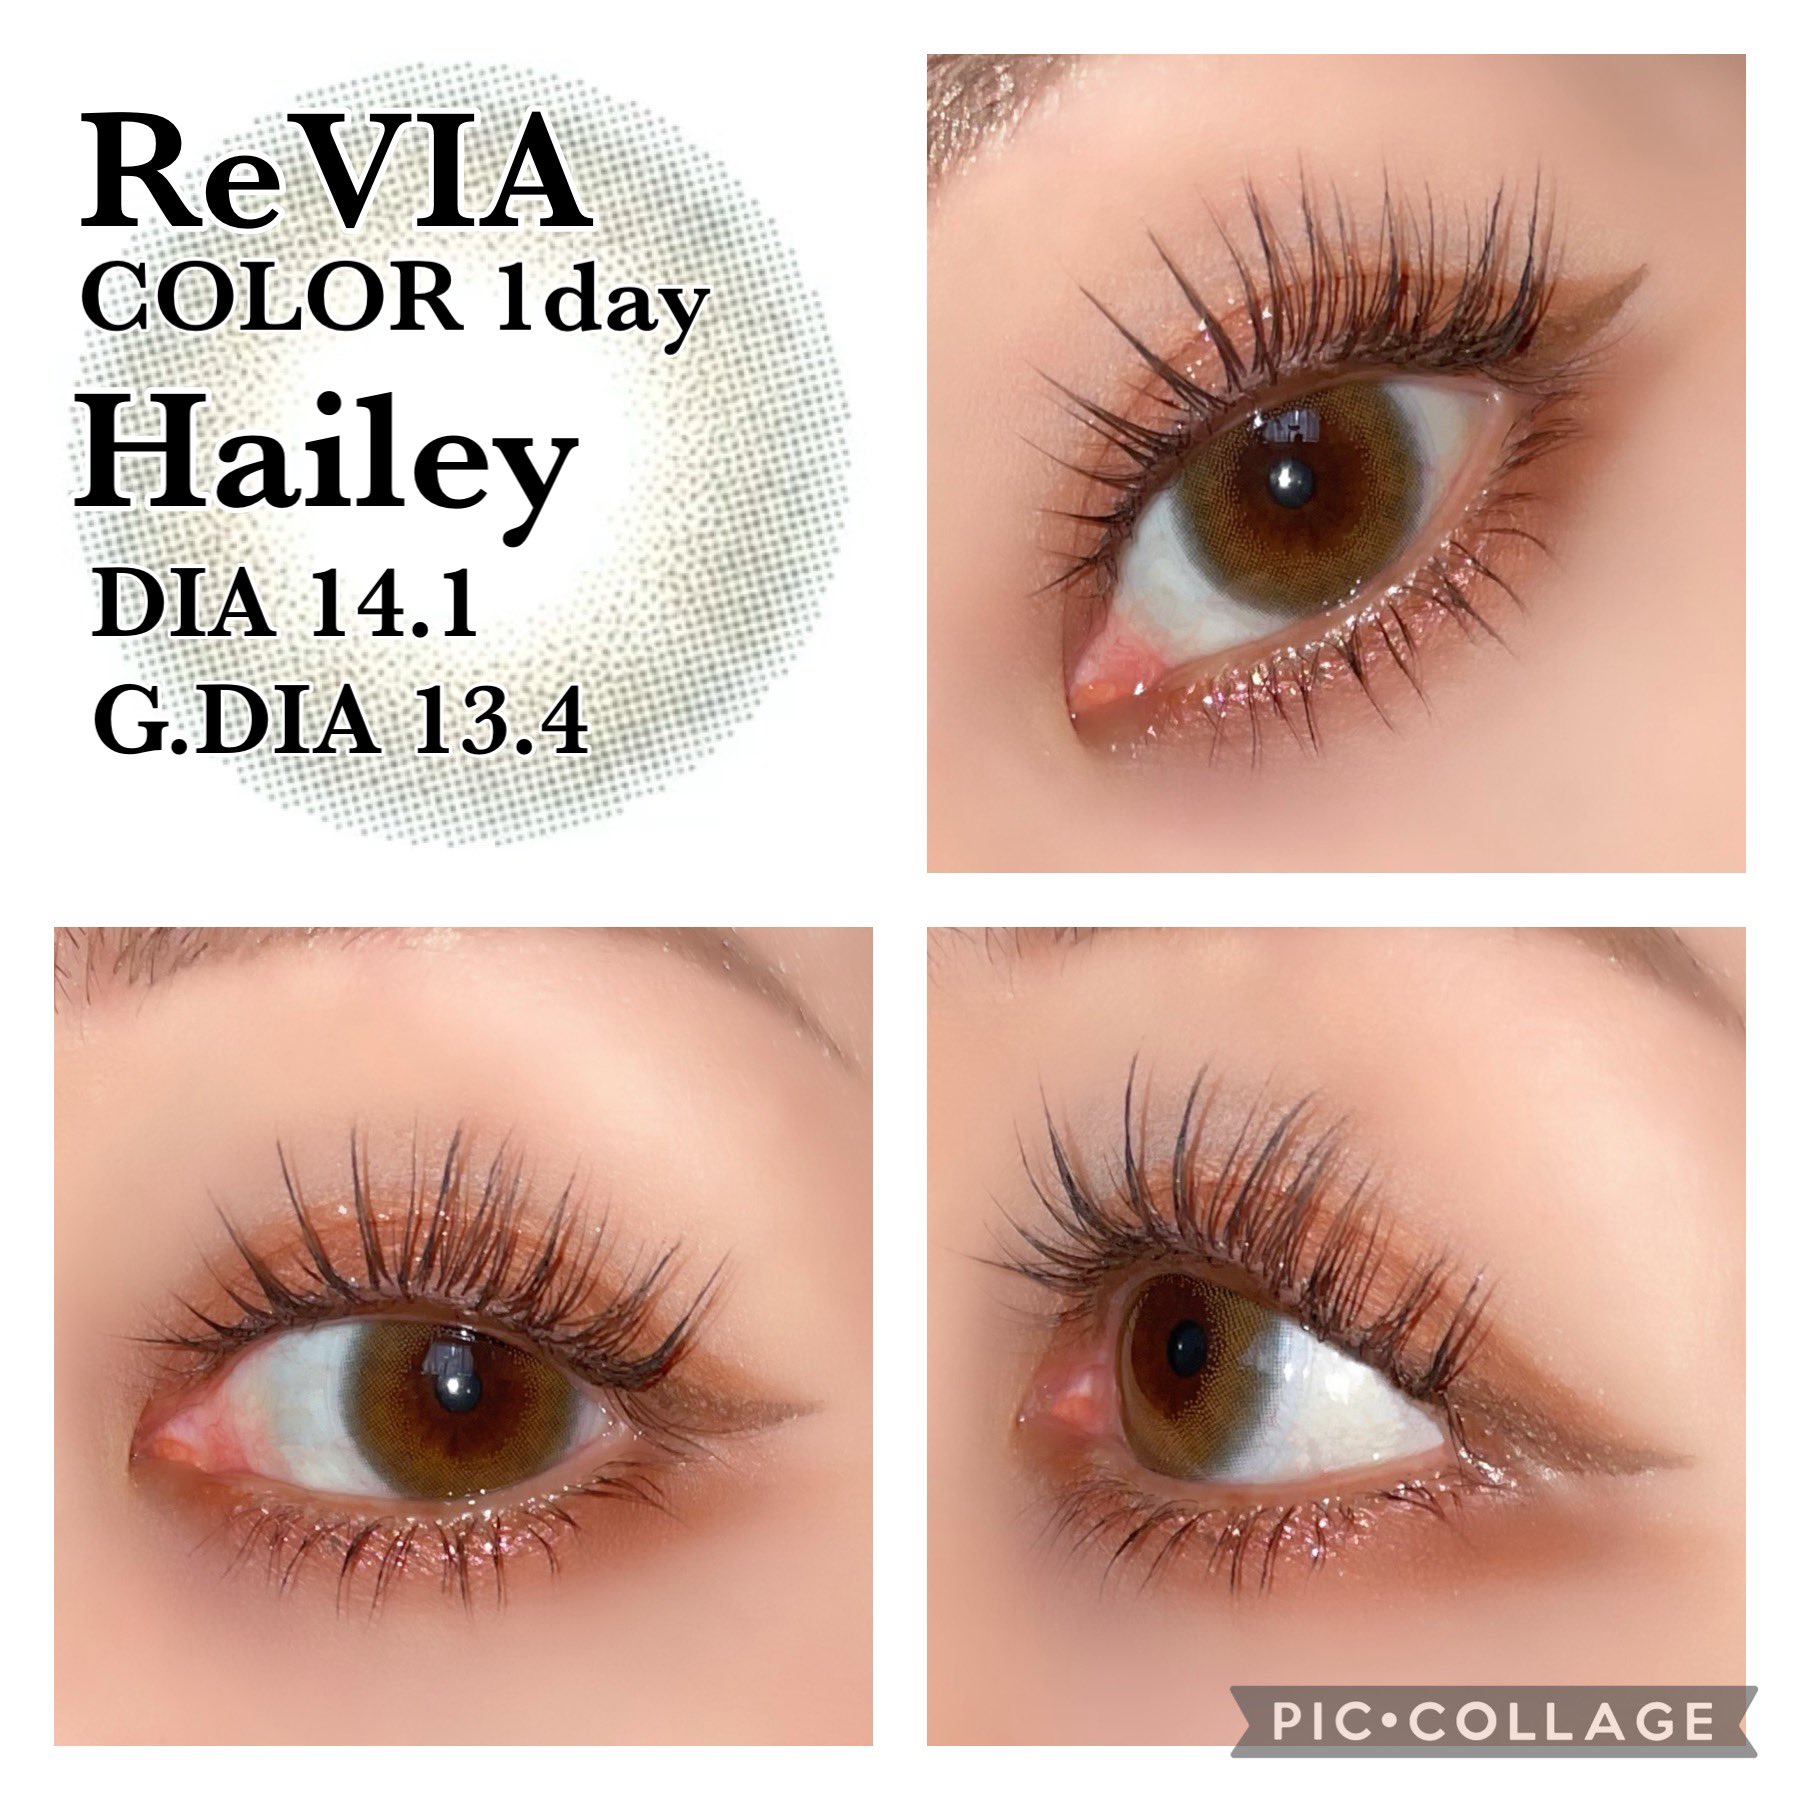 ReVIA 1day Hailey